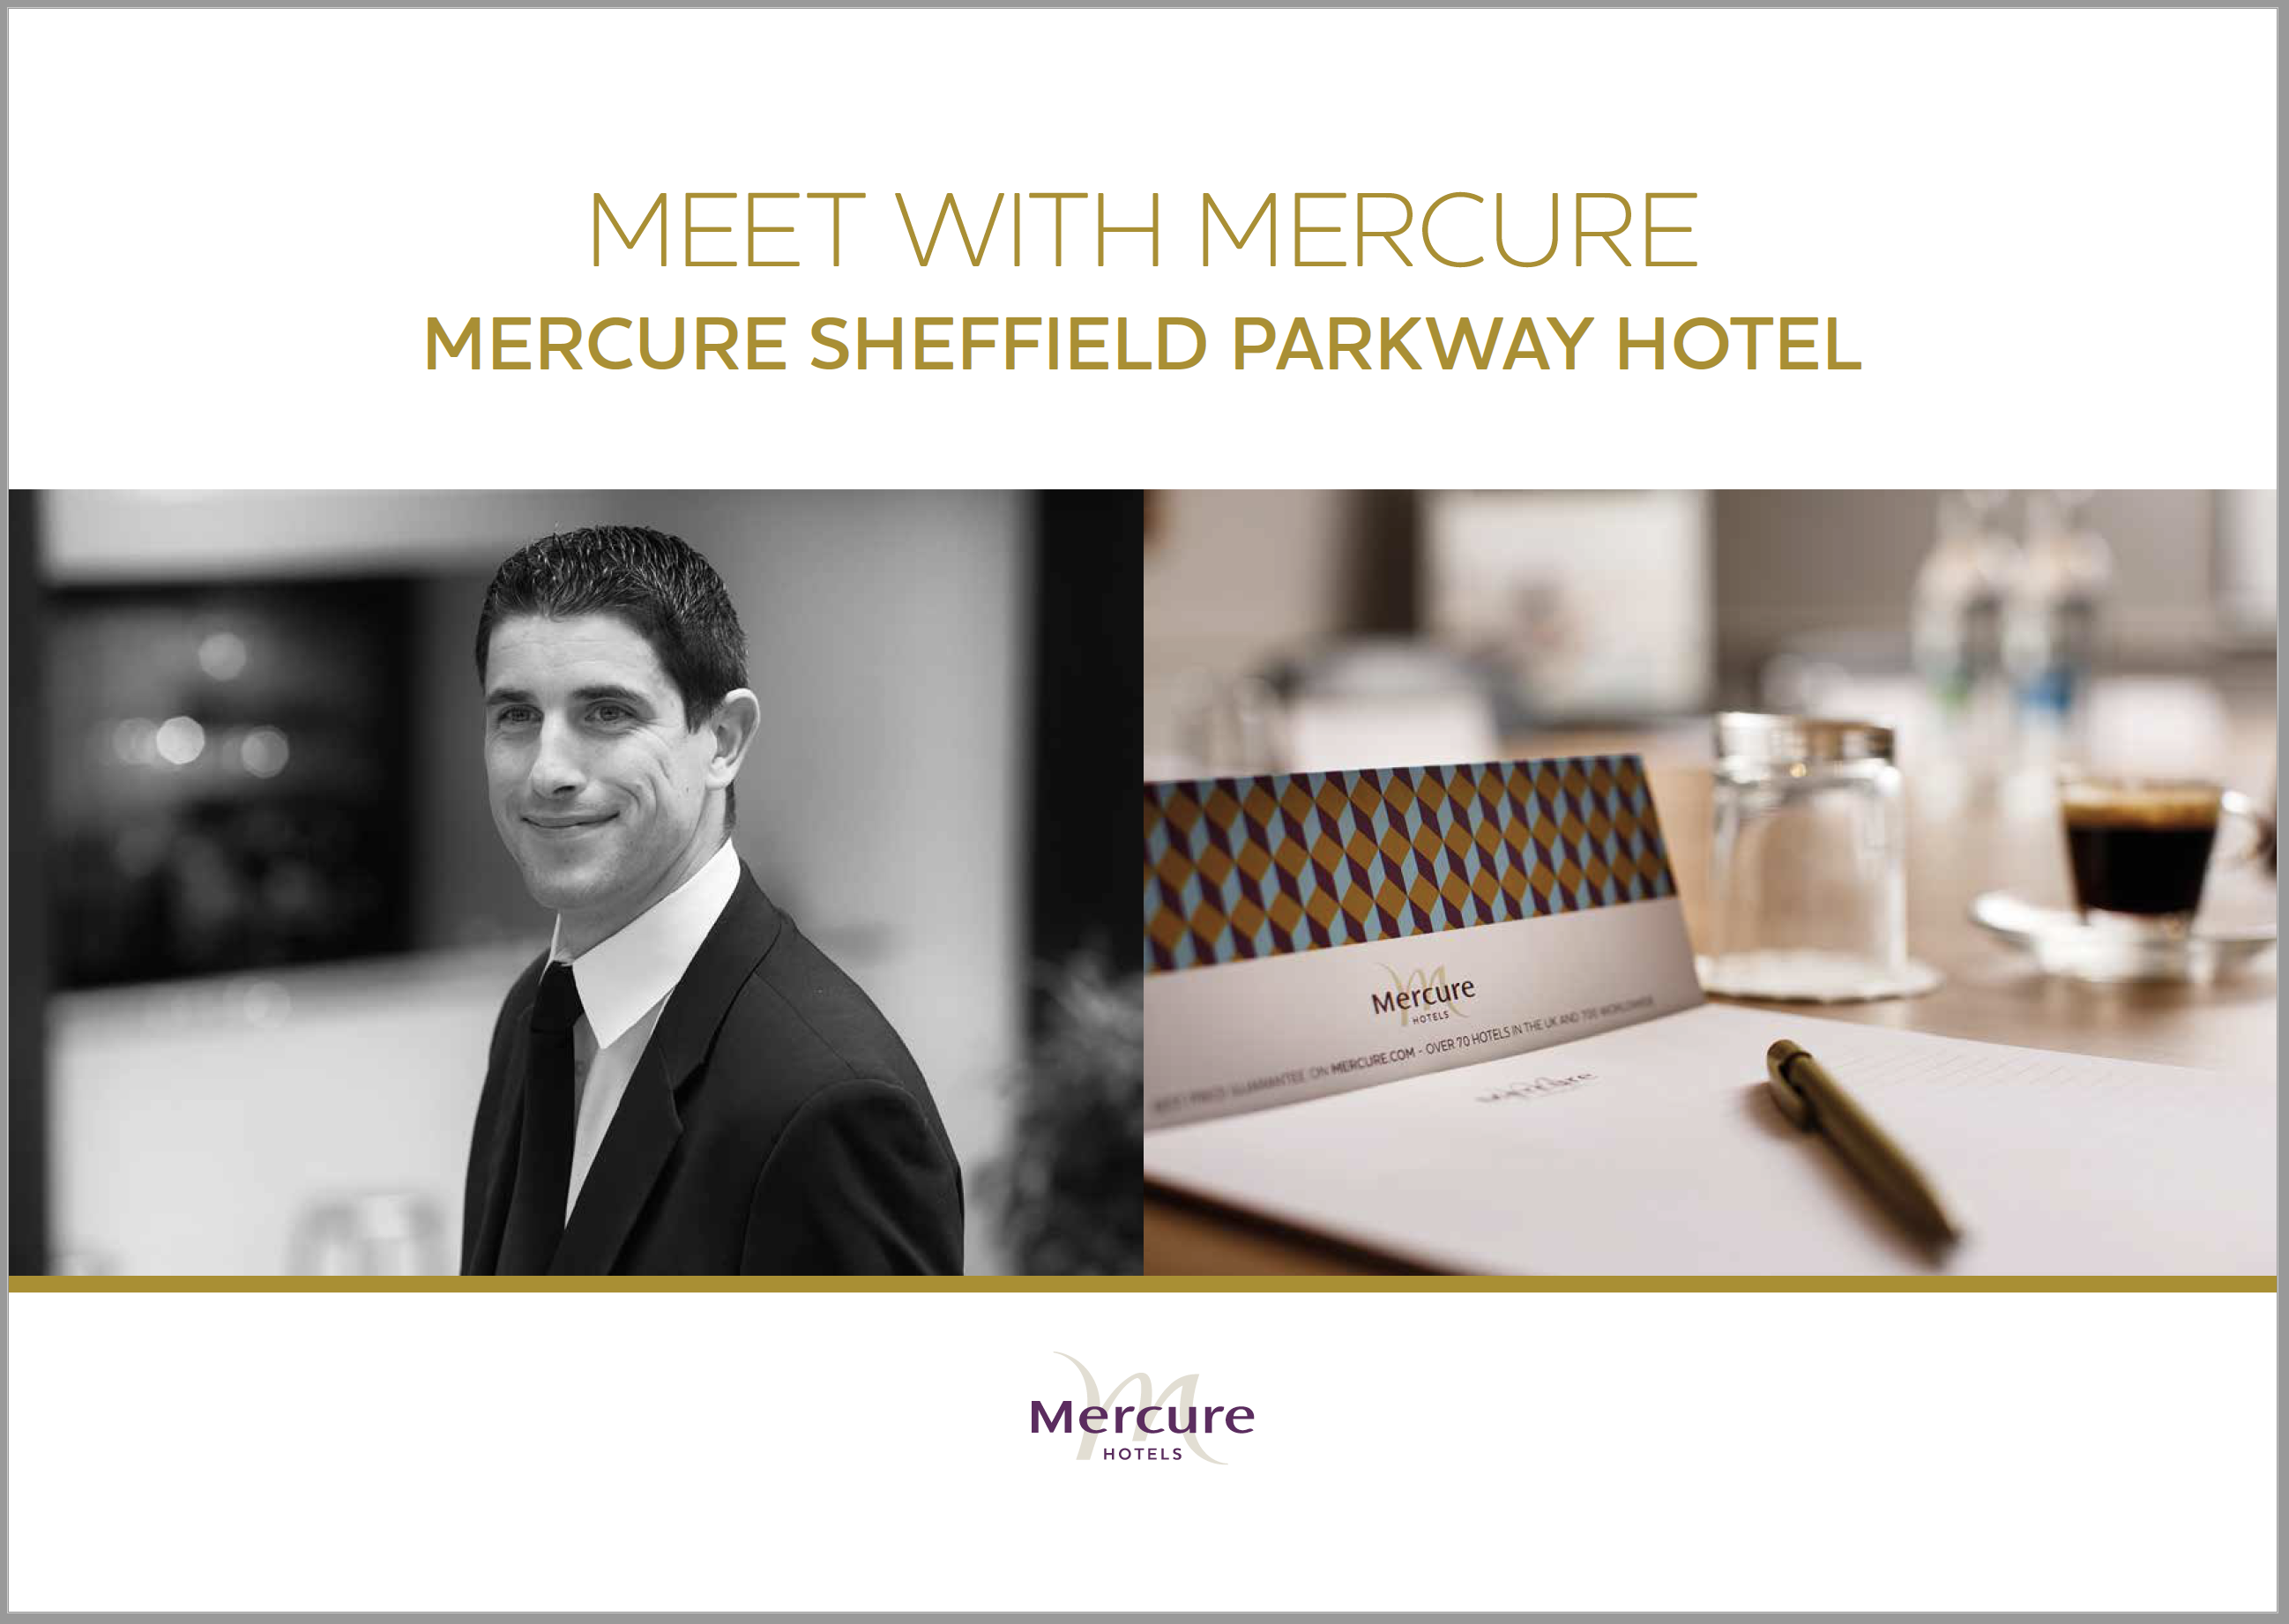 Mercure Sheffield Parkway Hotel – Meetings Brochure Cover